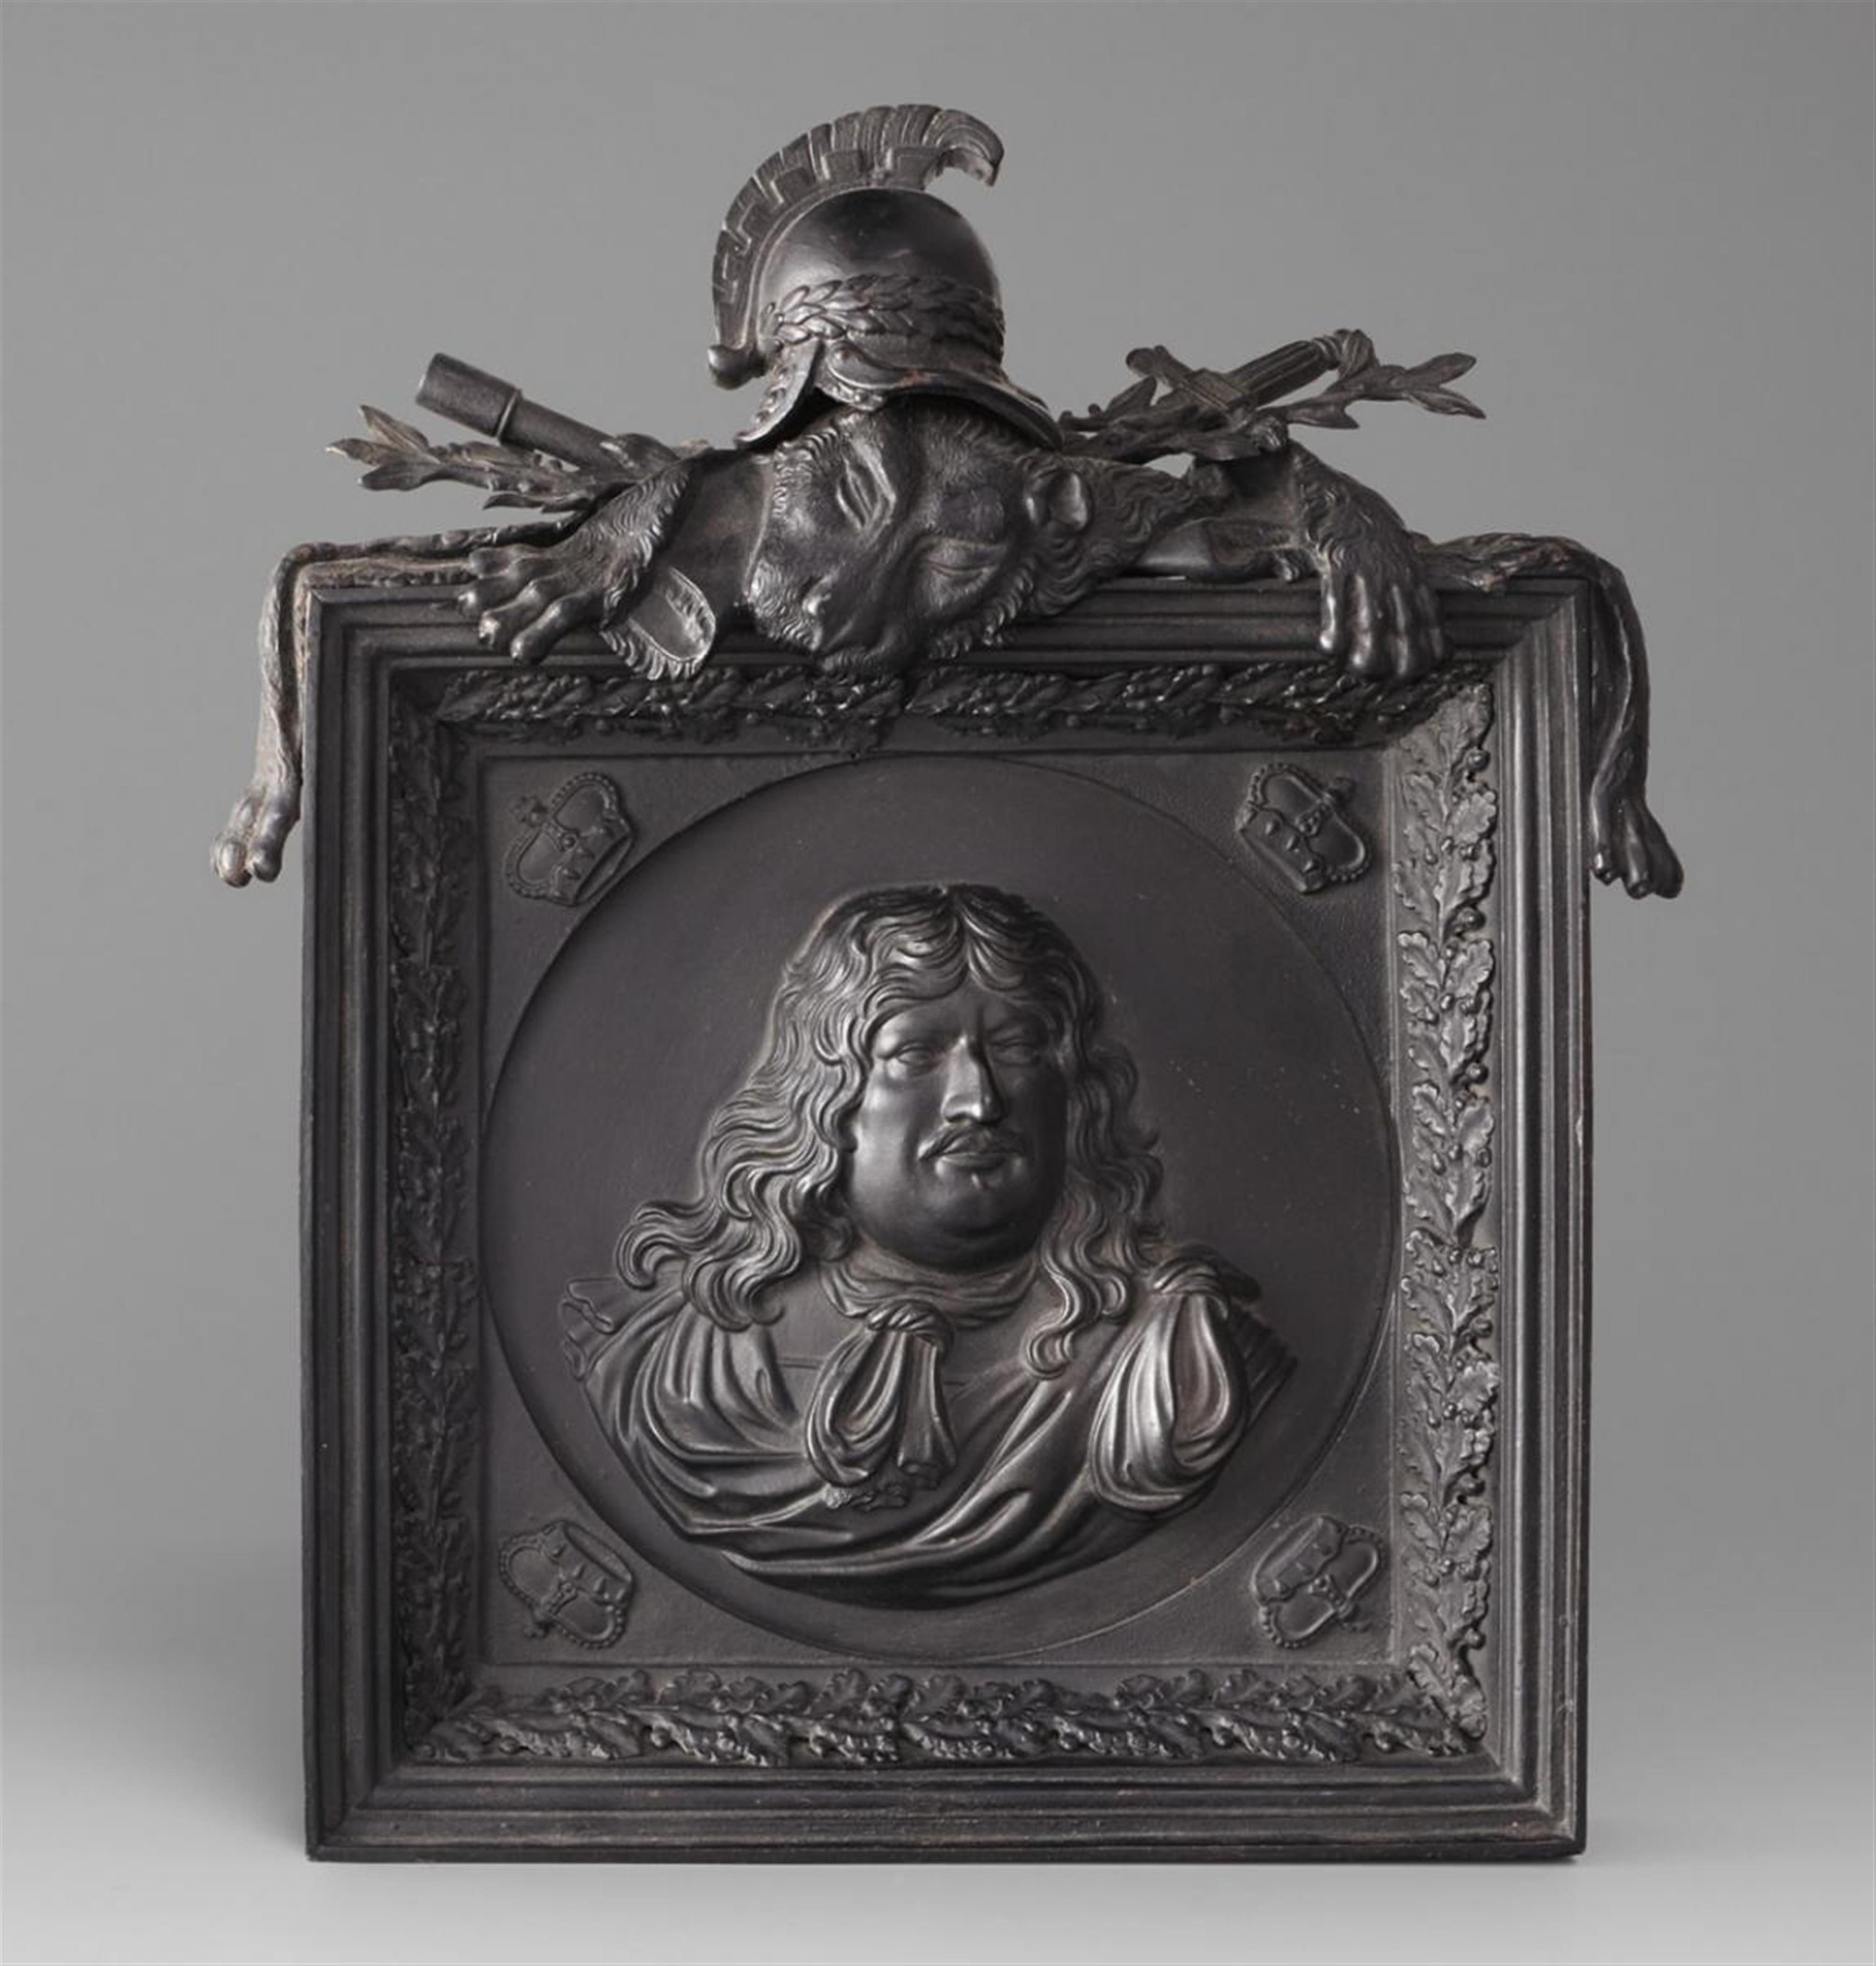 A black patinated cast iron plaque with a depiction of Elector Friedrich Wilhelm von Brandenburg (1620 - 1688) - 